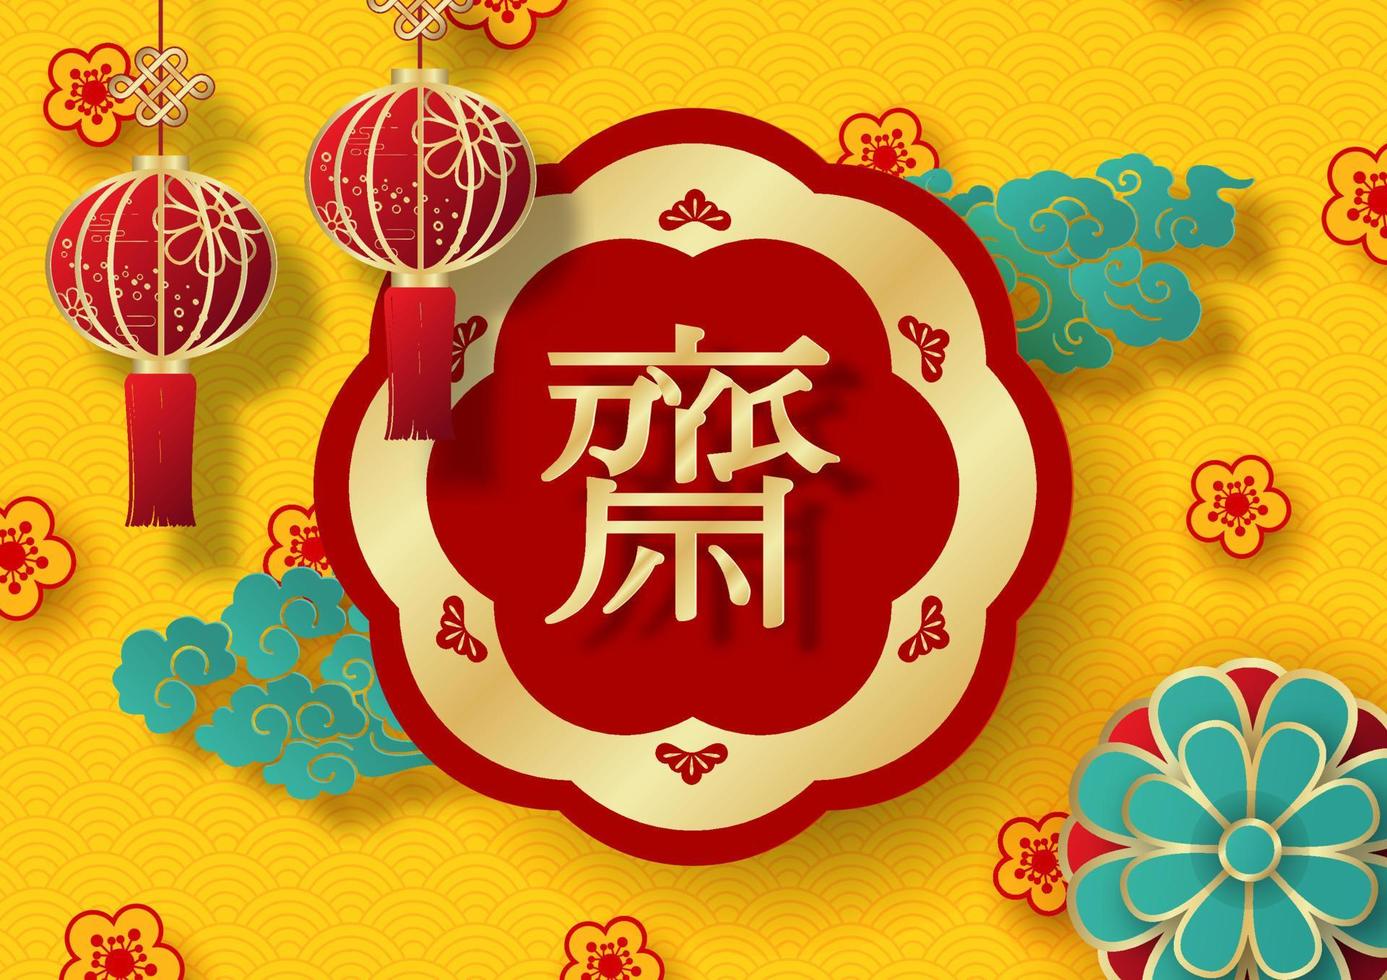 lanternas chinesas na bandeira vermelha dourada gigante com letras chinesas em nuvens verdes, flores de decoração e fundo padrão de onda amarela. letras chinesas significa jejuar para adorar buda em inglês vetor